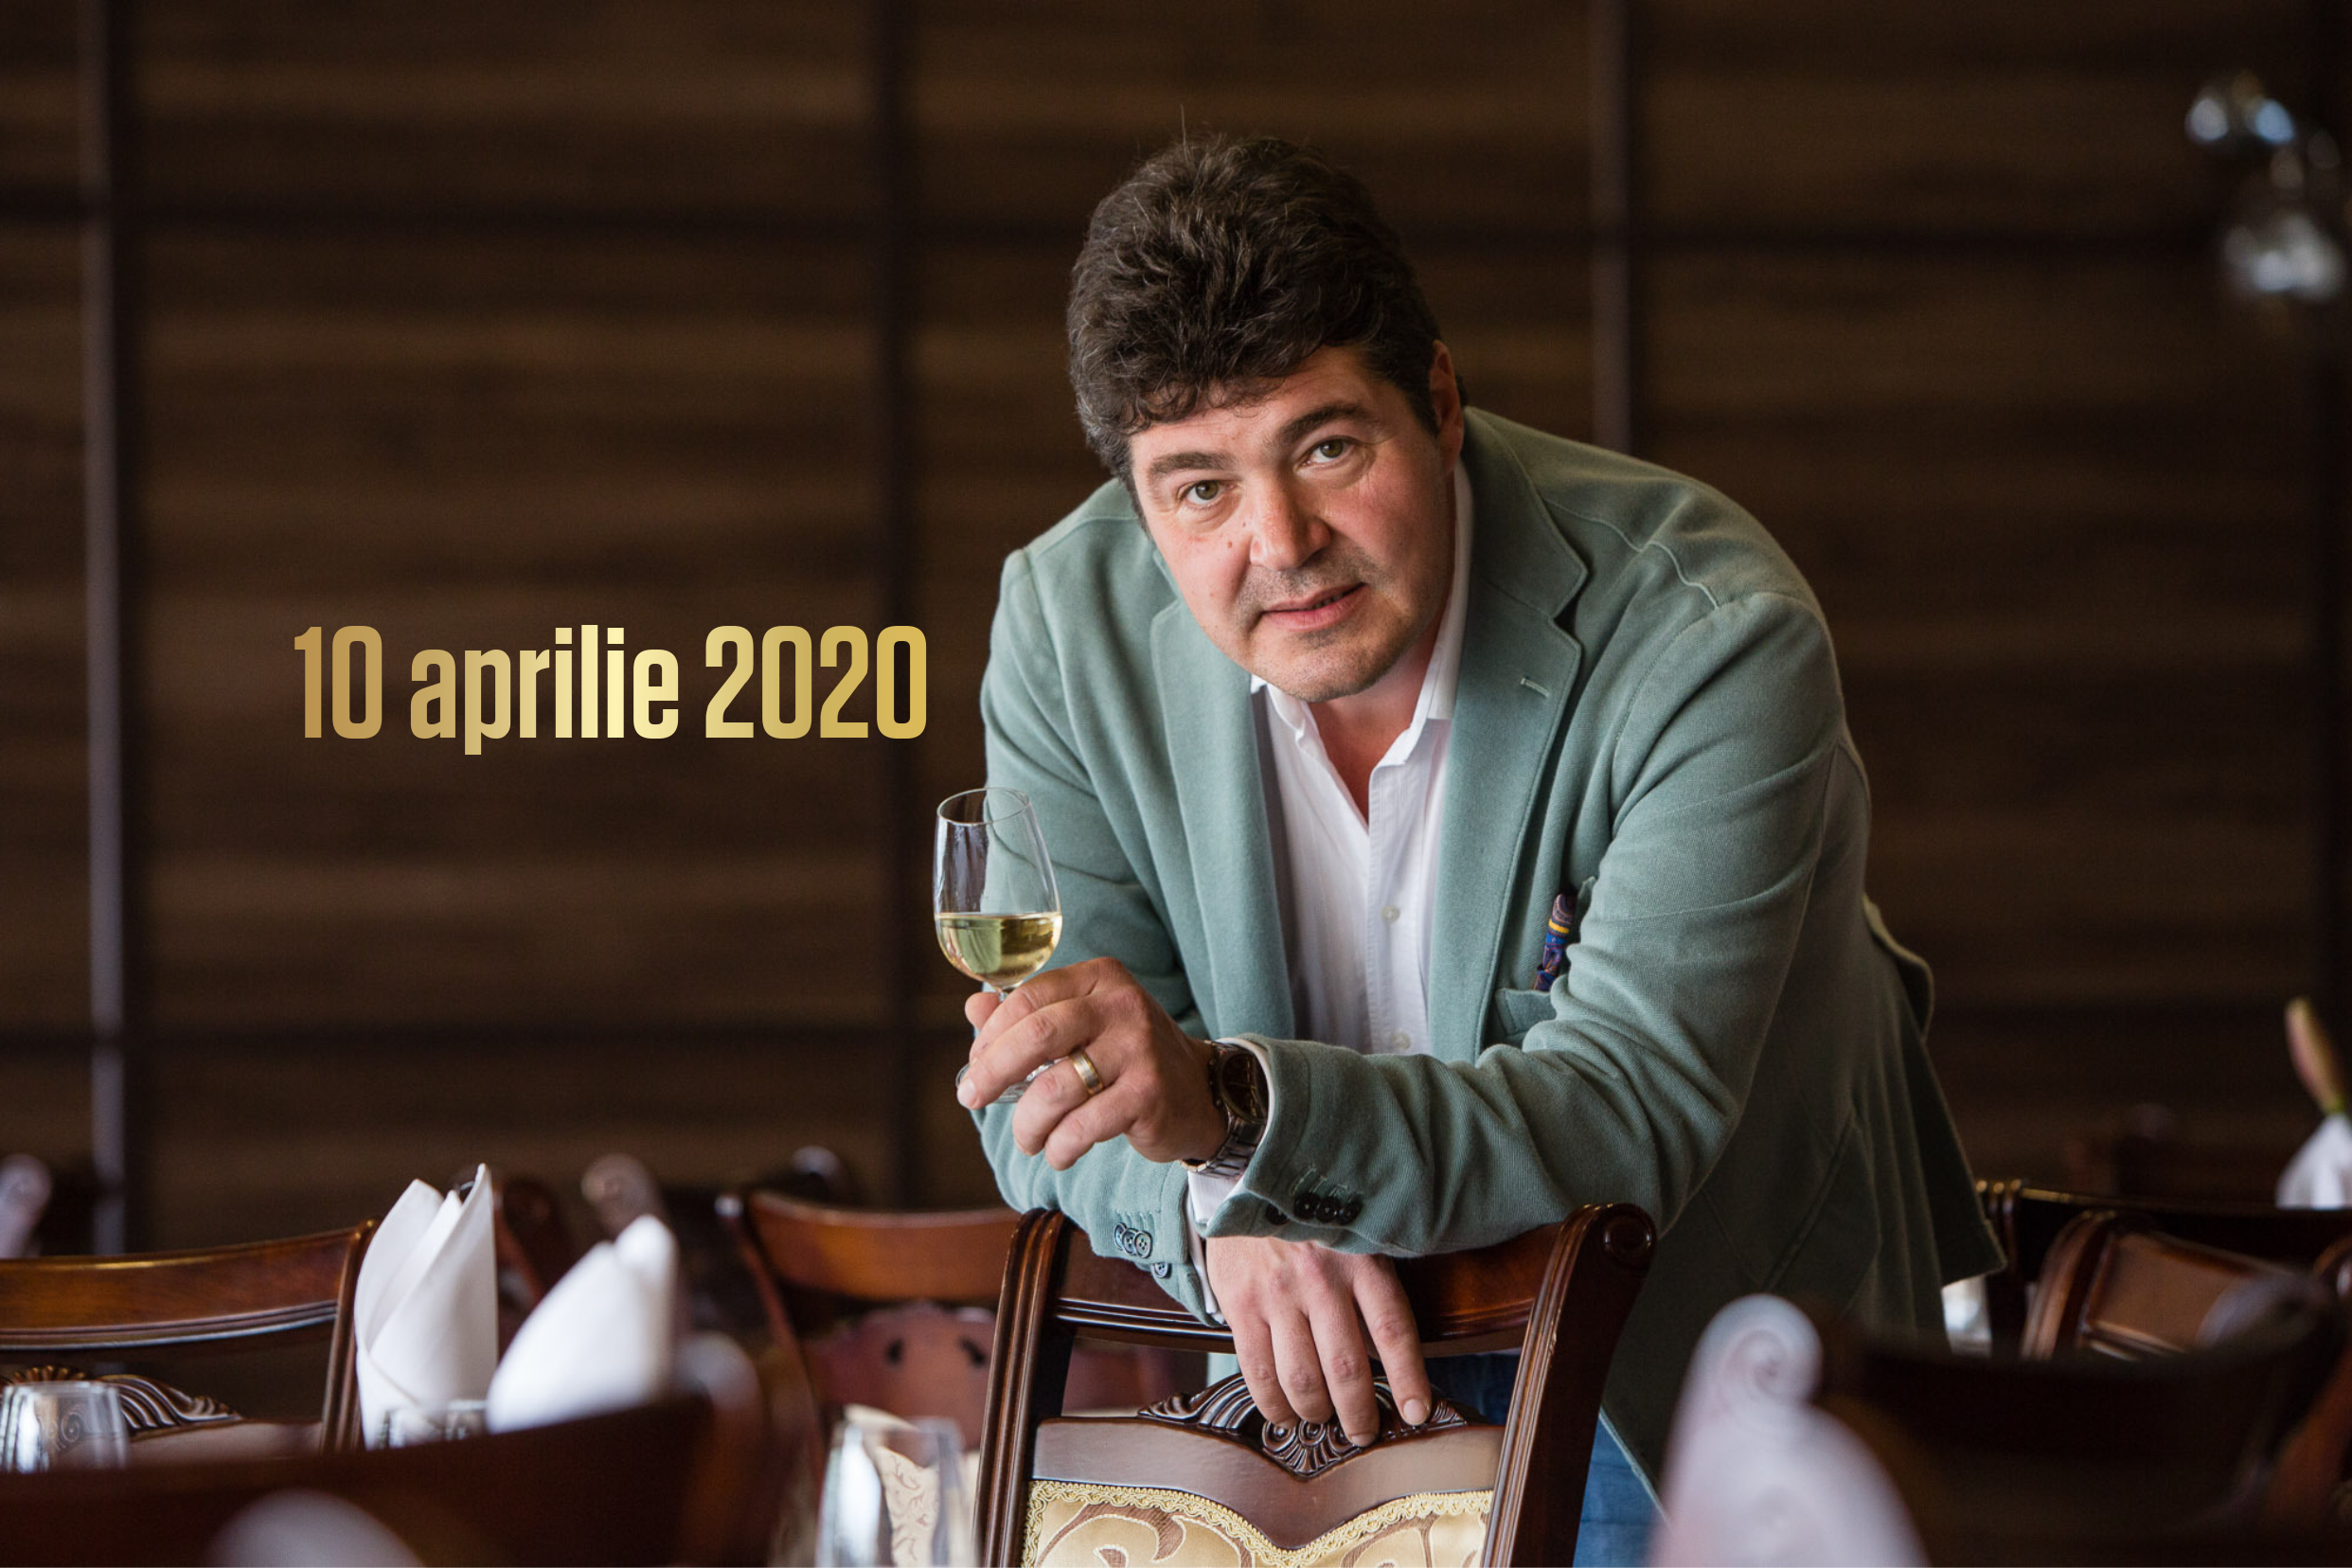 10 aprilie 2020 – Ce vinuri bem în acest weekend, 3 vinuri pentru 3 seri. Recomandările lui Cătălin Păduraru, Preşedintele VINARIUM International Wine Contest